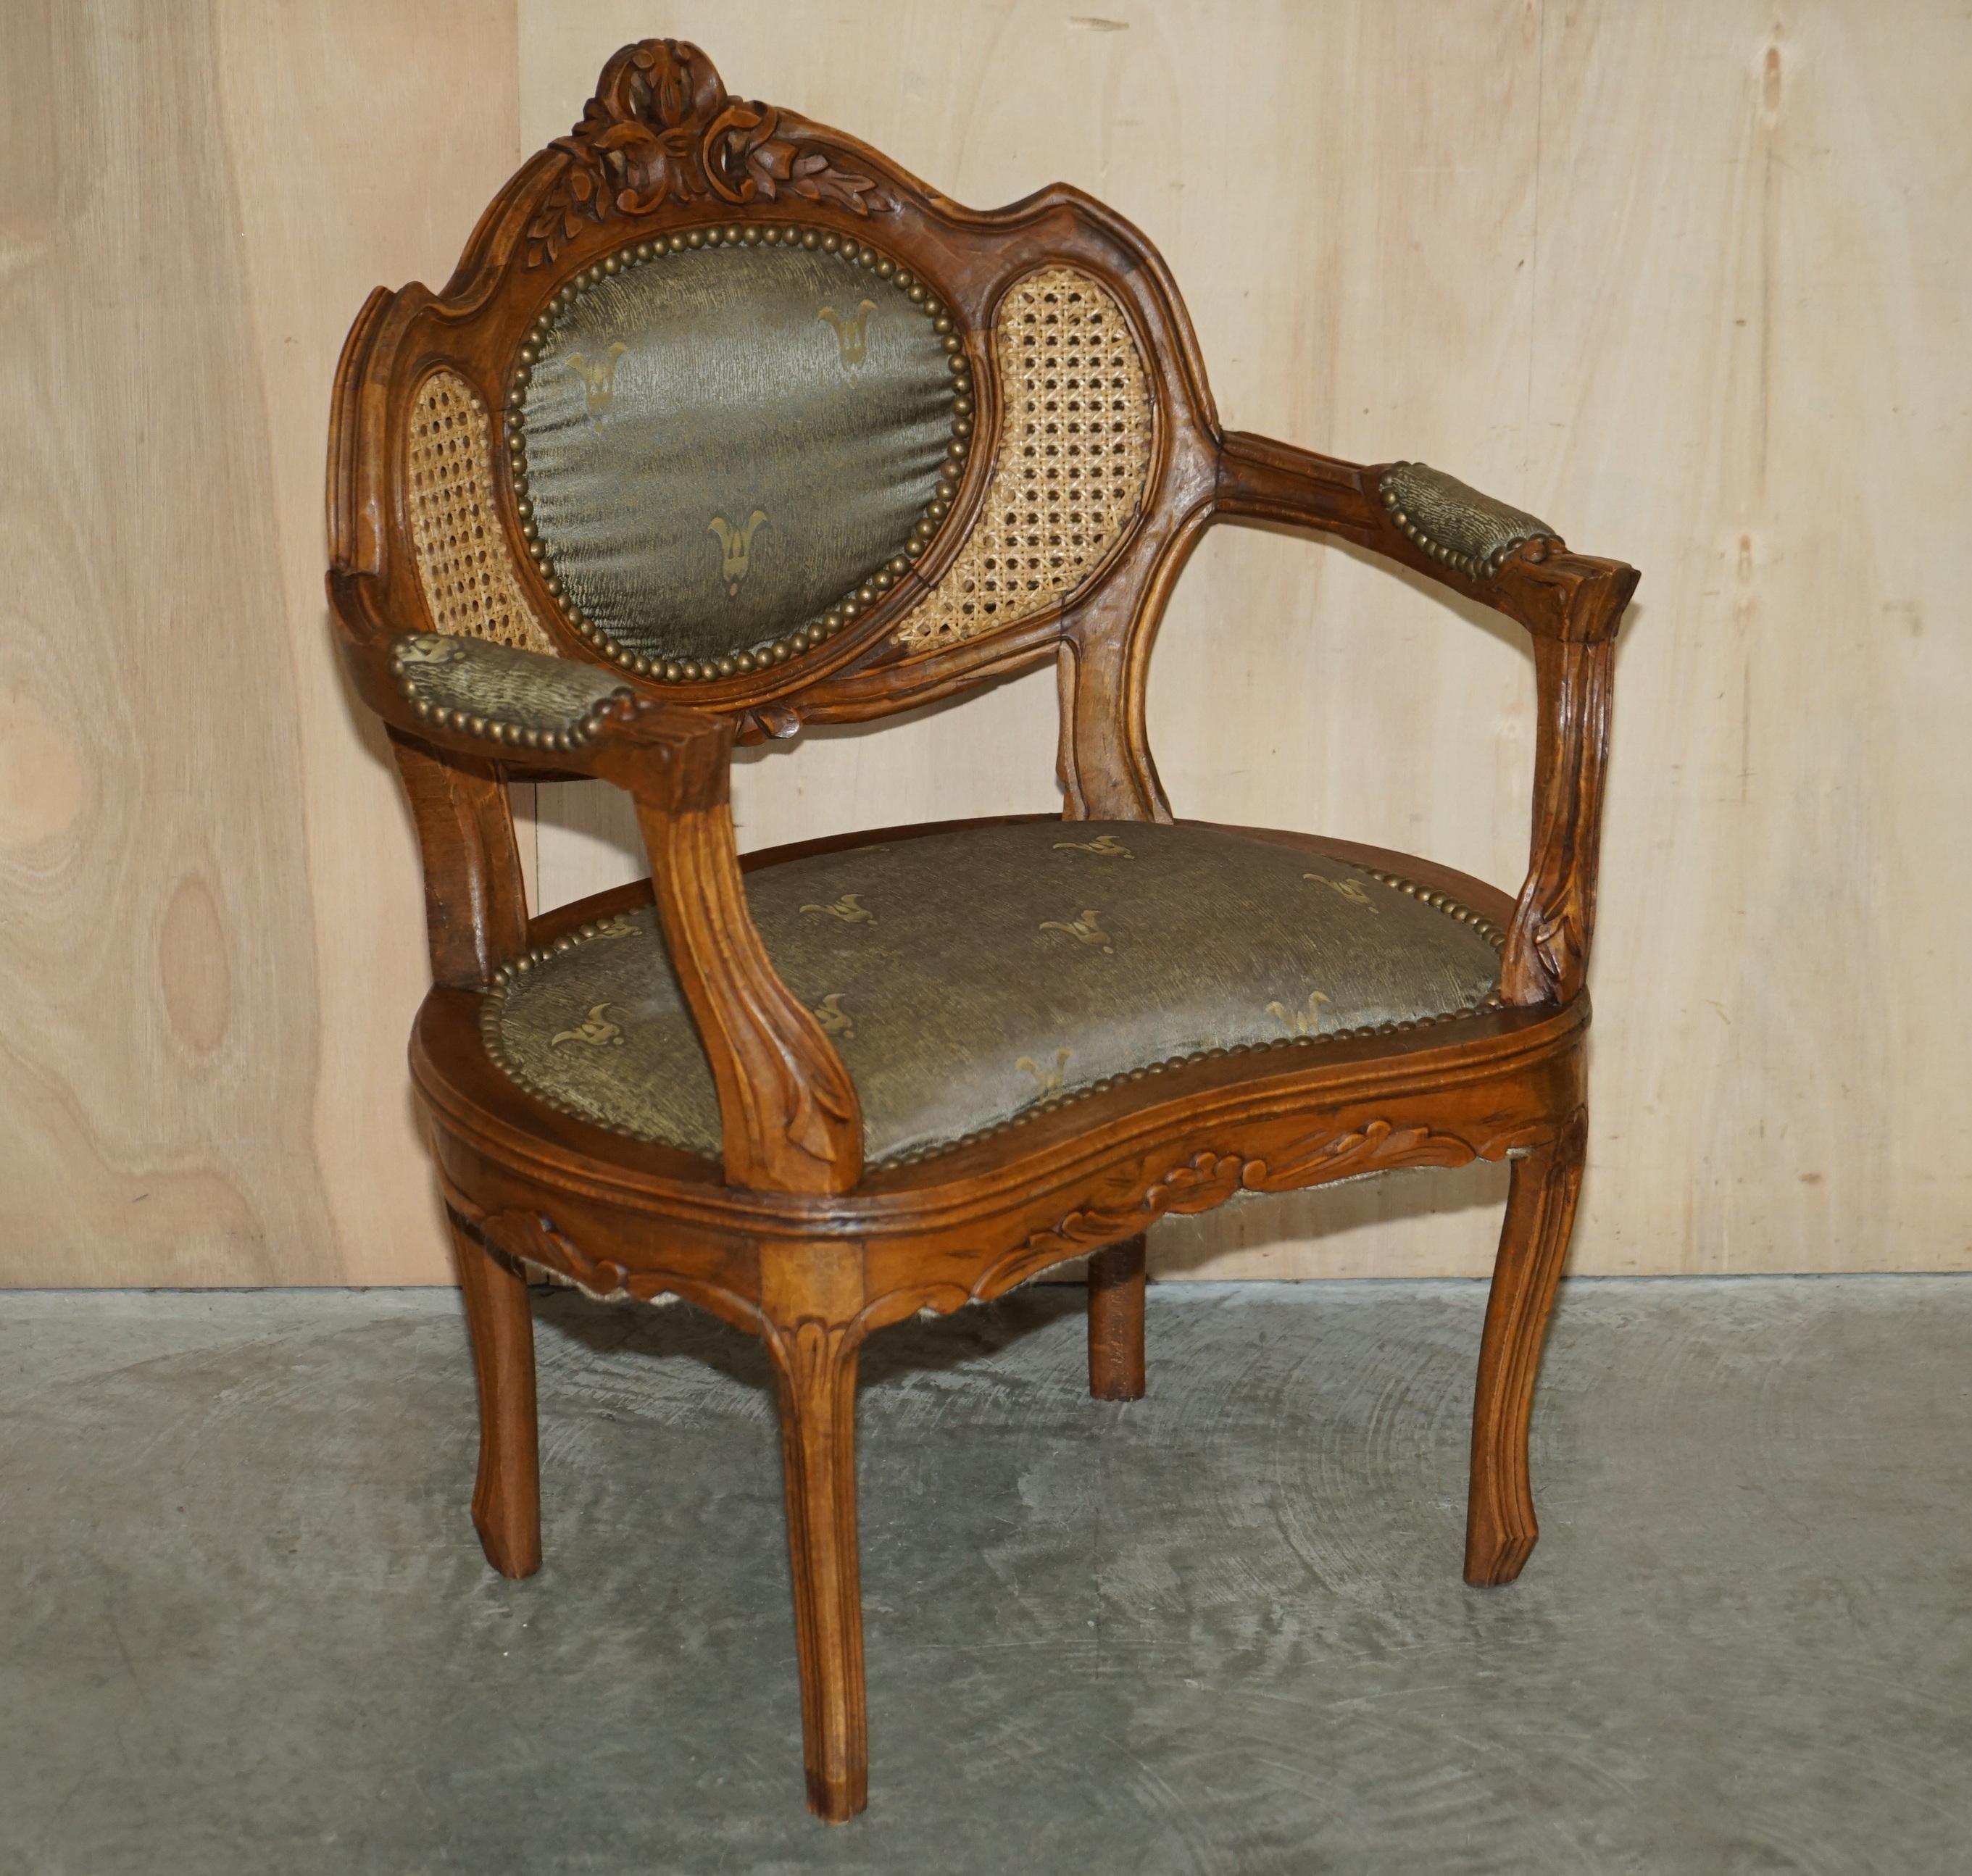 Nous sommes ravis d'offrir à la vente cette superbe paire de fauteuils bergère originaux vers 1890 de style Napoléon III Louis XVI avec la table d'appoint assortie. 

Ces chaises sont accompagnées d'un canapé de salon assorti qui est listé dans